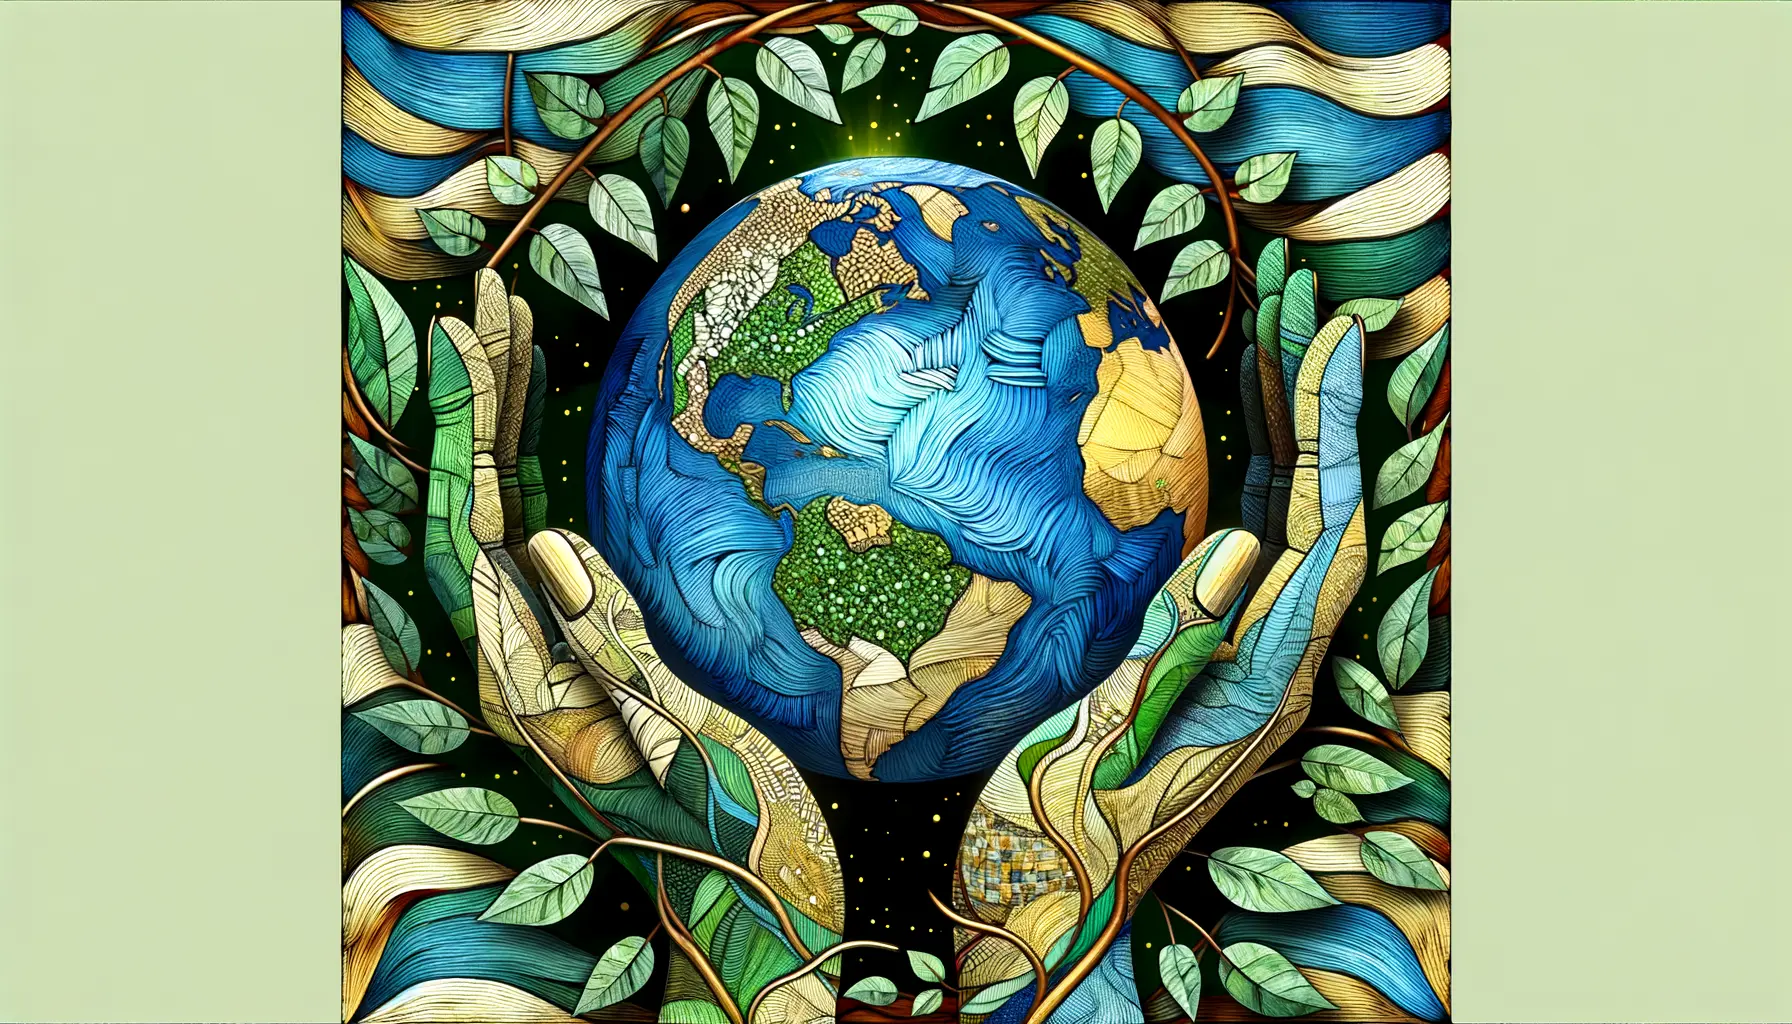 Unsere Erde in unseren Händen - Verantwortung für den Planeten